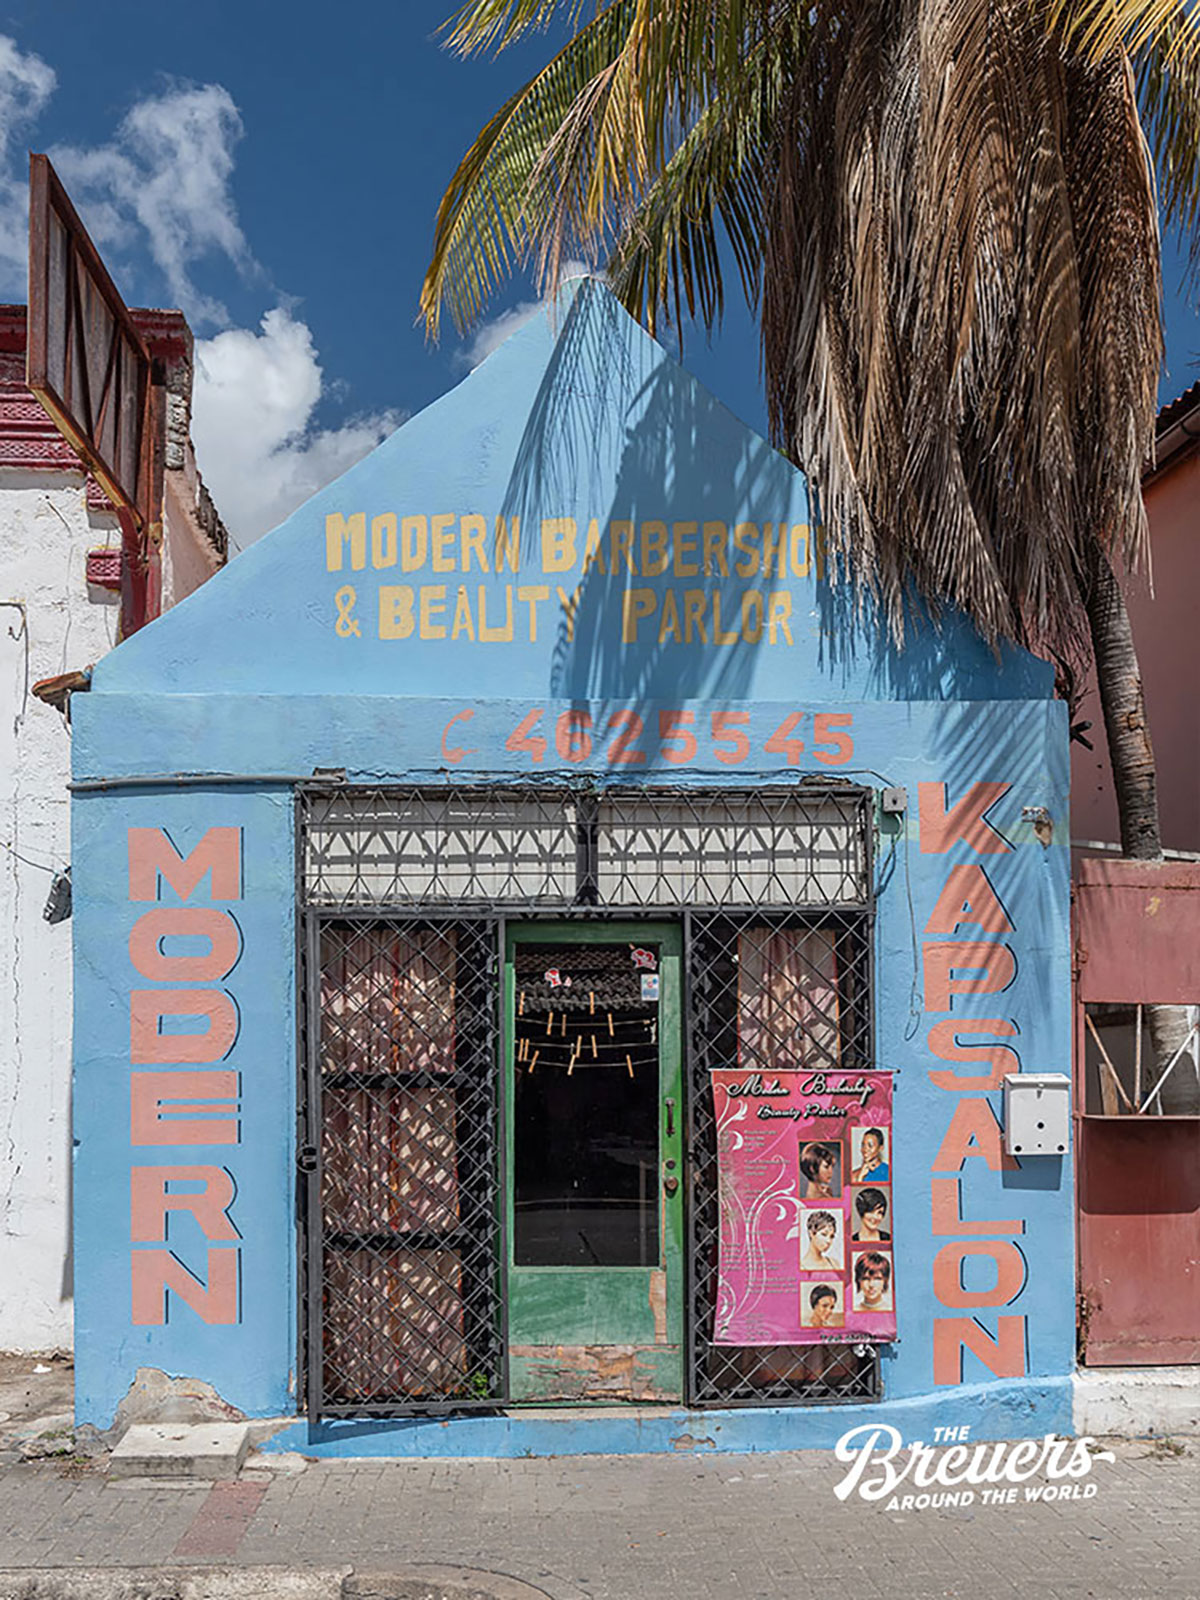 Beautyshop in Willemstadt Curacao